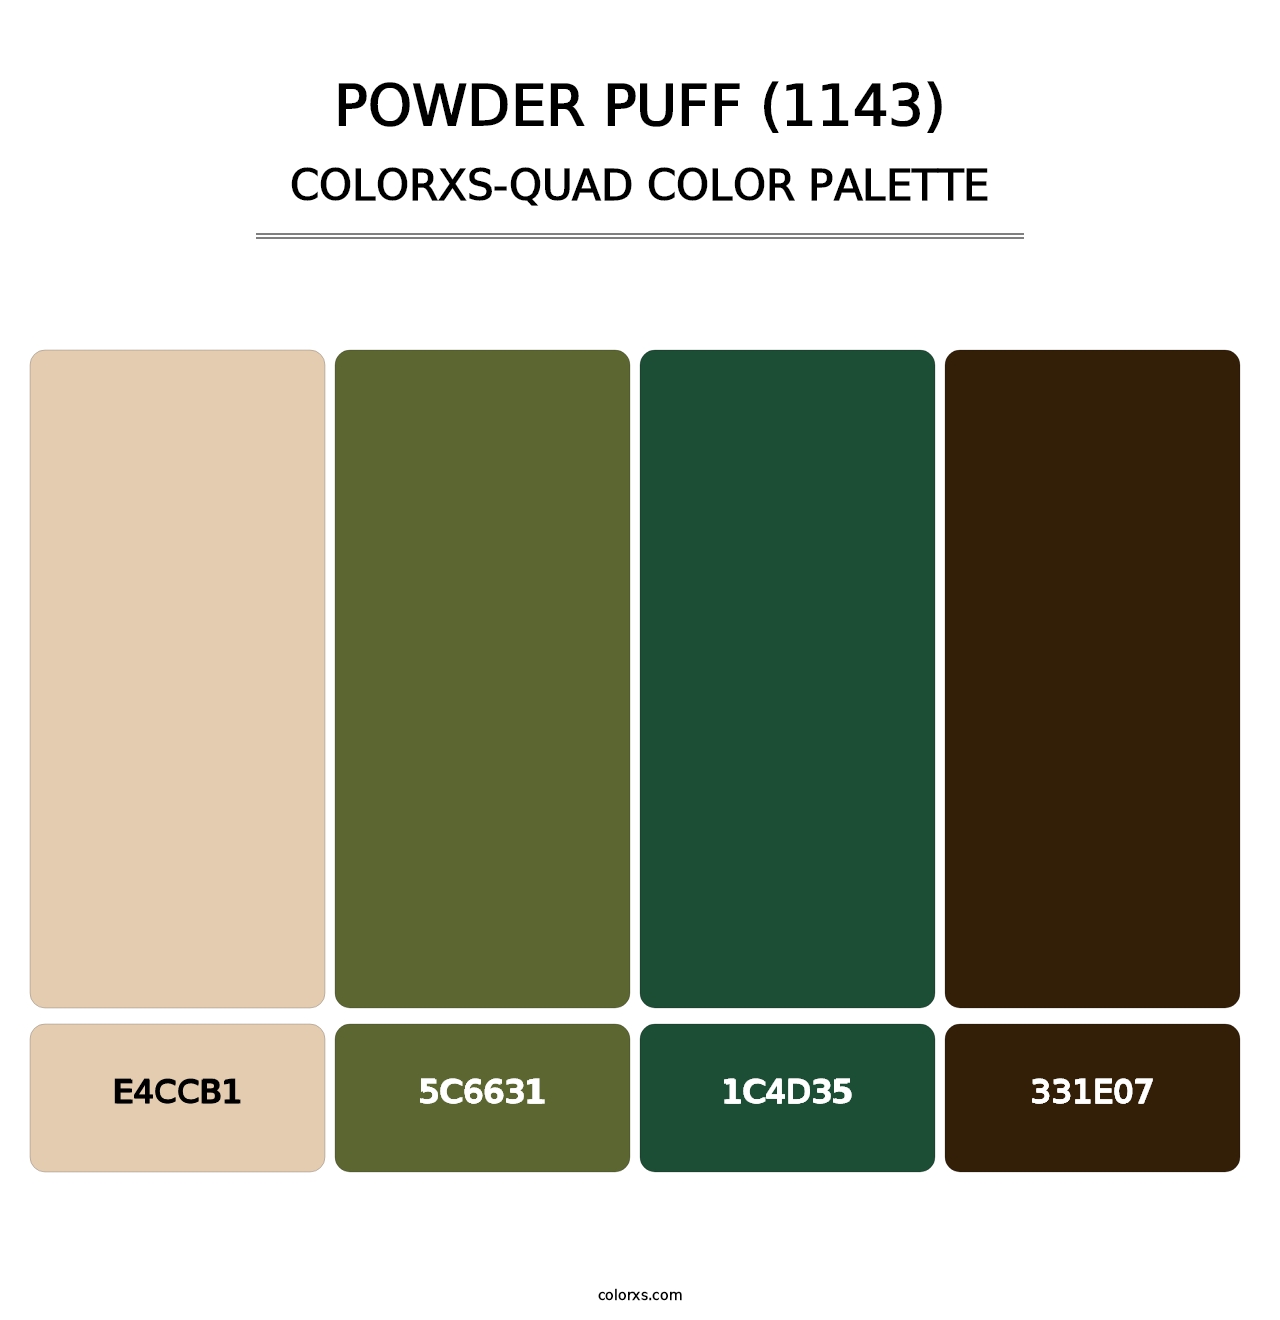 Powder Puff (1143) - Colorxs Quad Palette